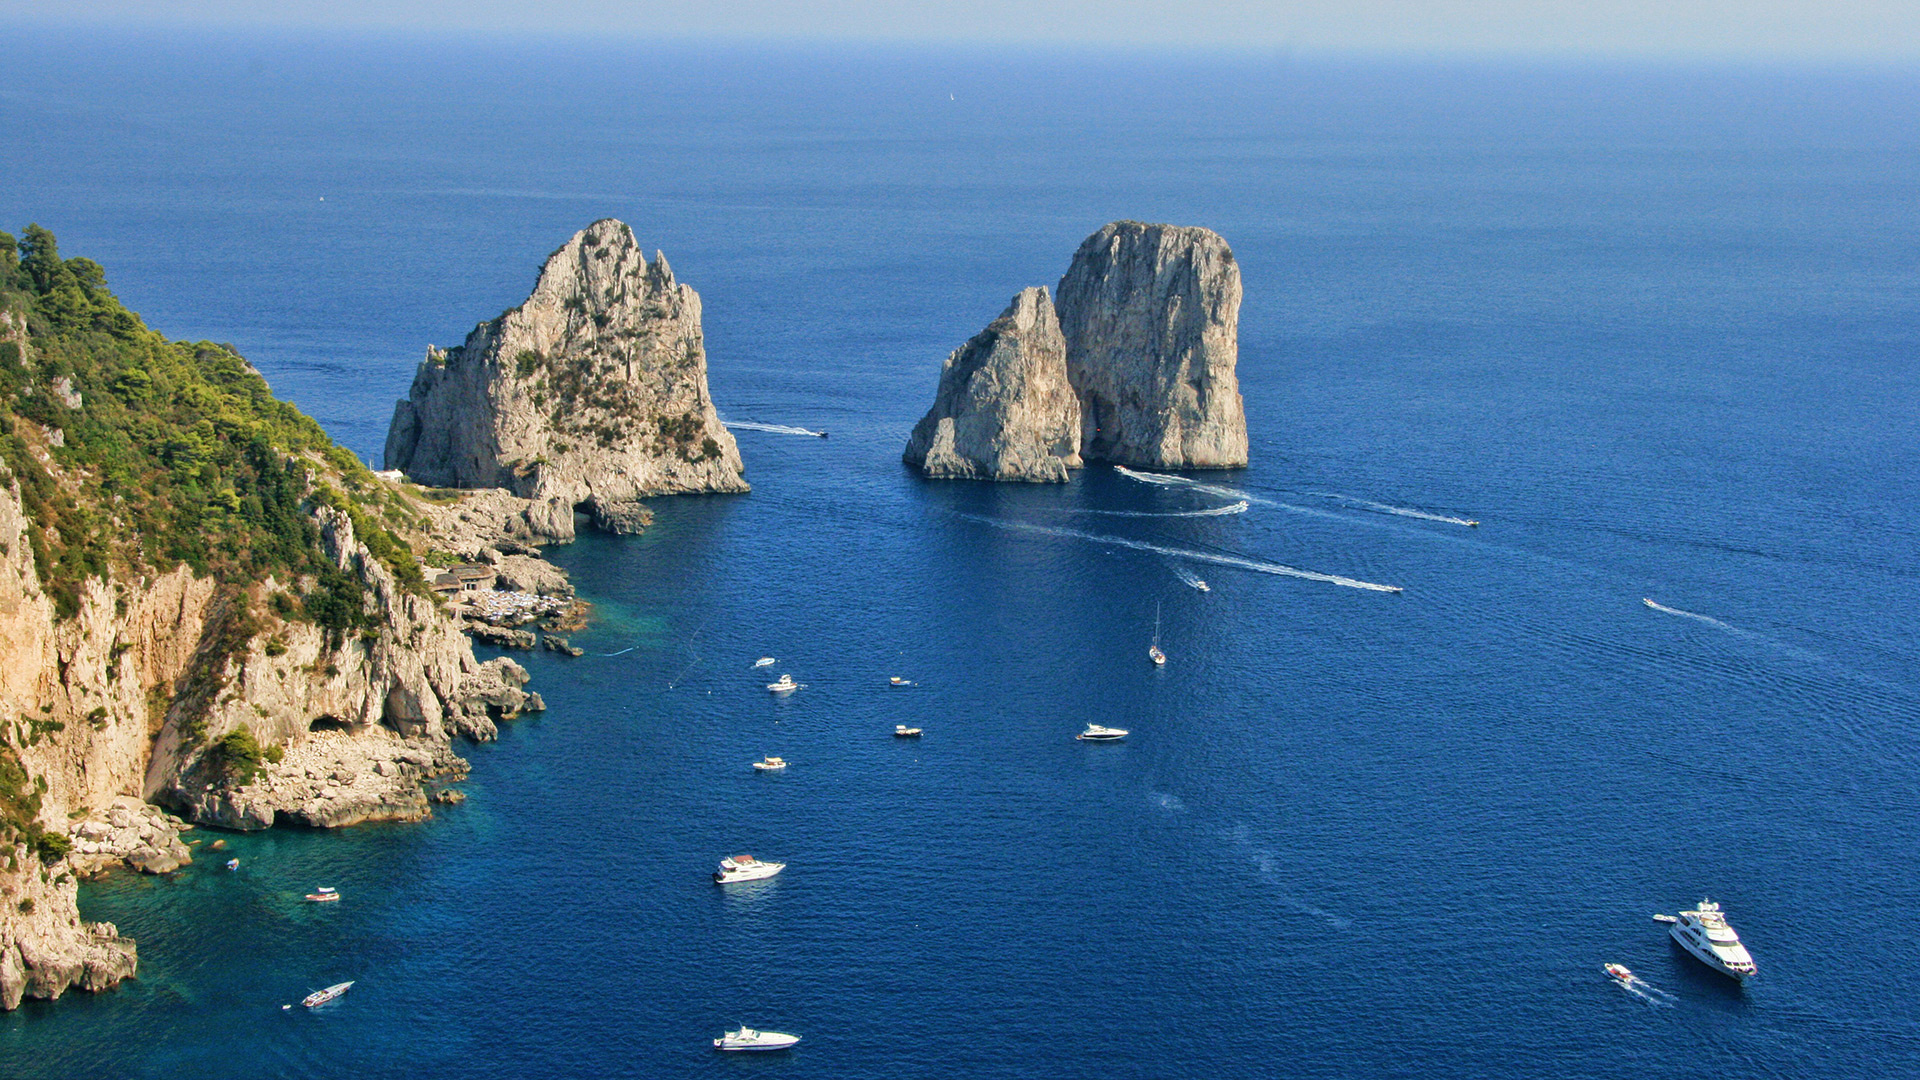 Capri Island, Boat tours, Exquisite excursions, Unforgettable memories, 1920x1080 Full HD Desktop